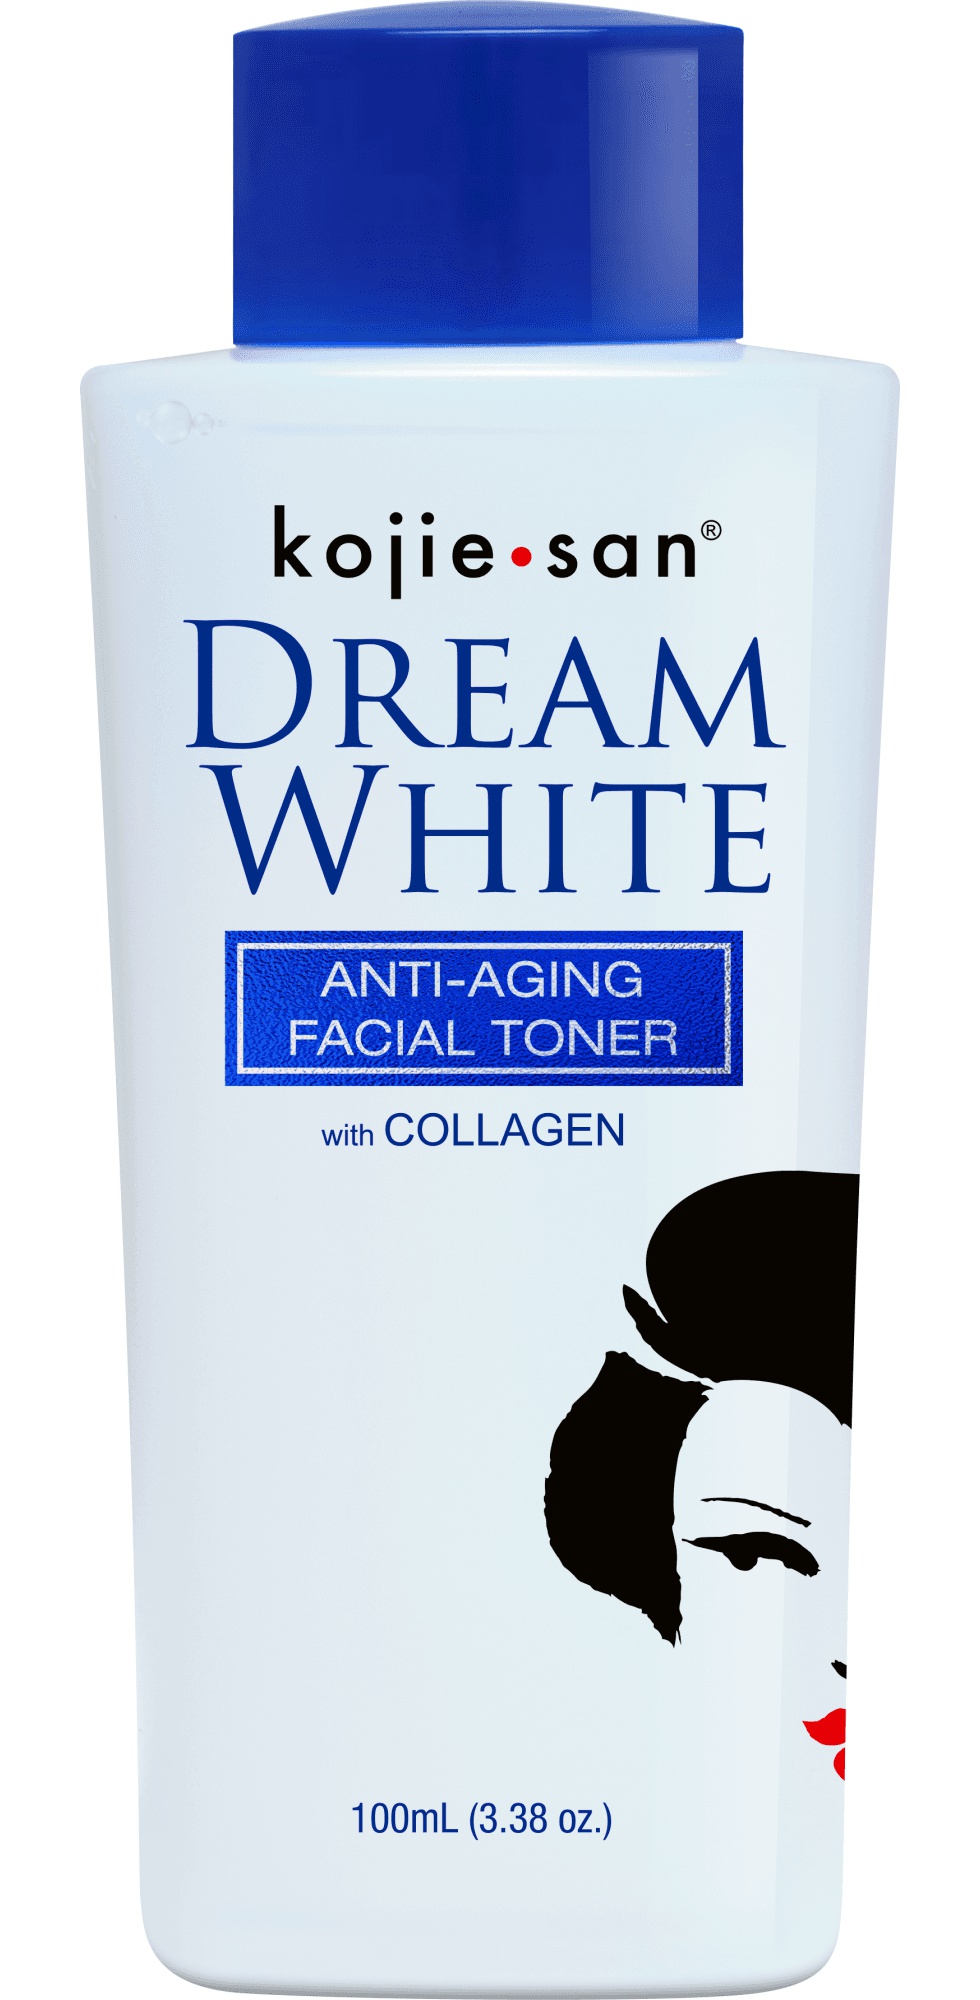 Kojie san Dream White Anti Aging Facial Toner